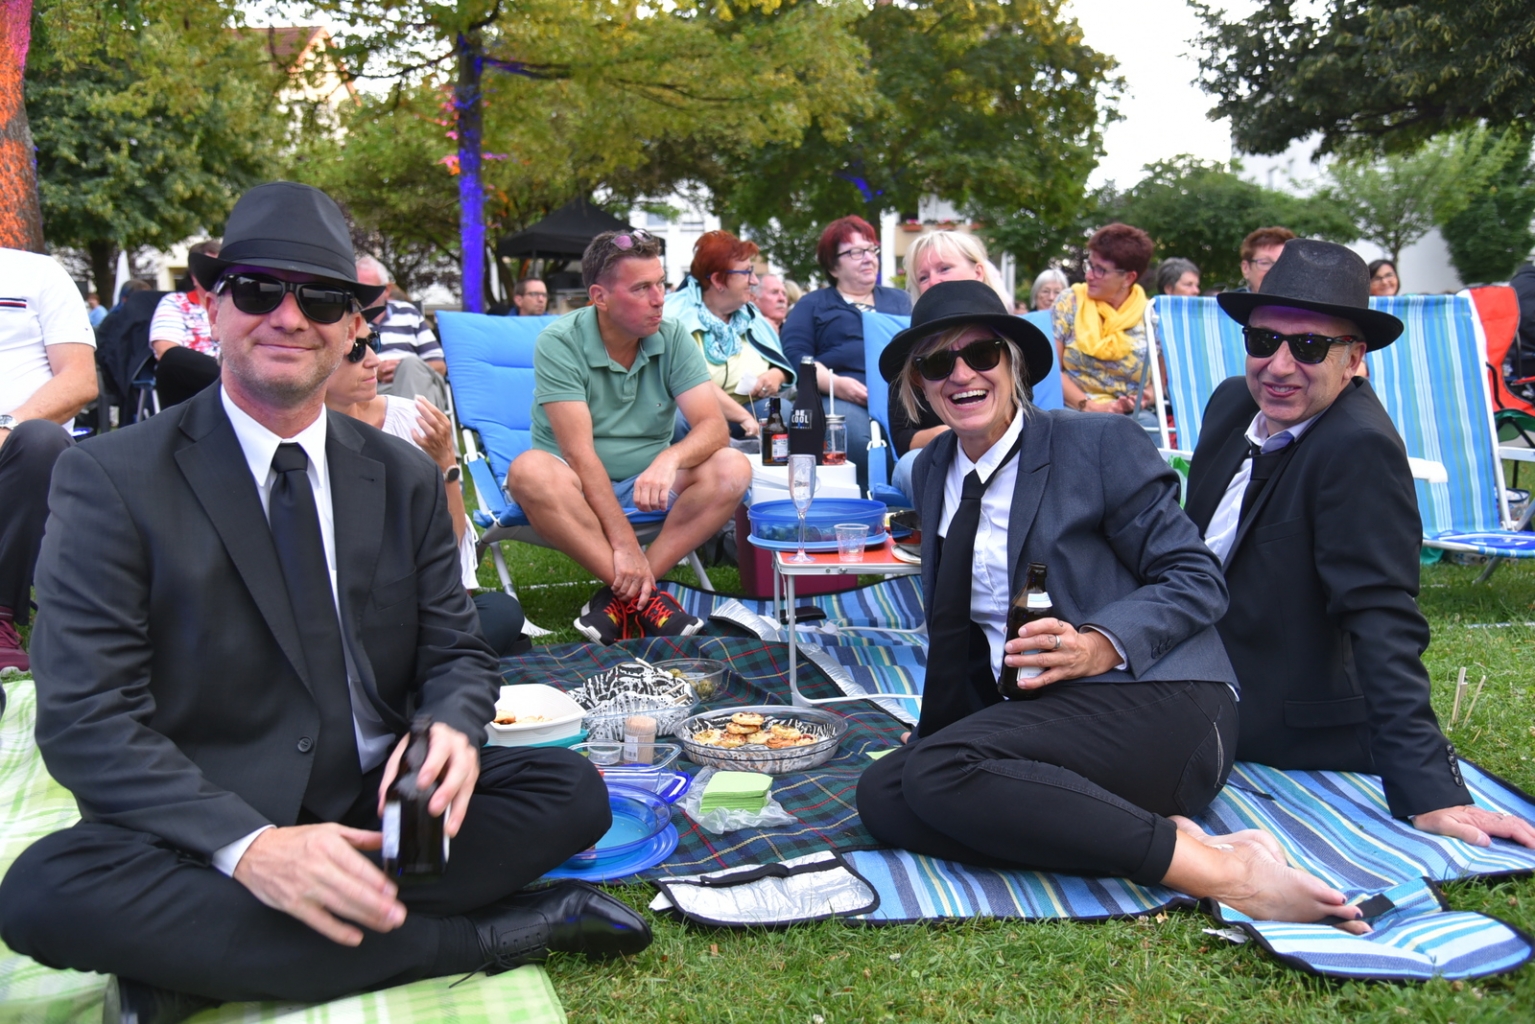 Etliche Besucher*innen sind wie die Blues Brothers in schwarz-weiß gekleidet und tragen Sonnenbrille.